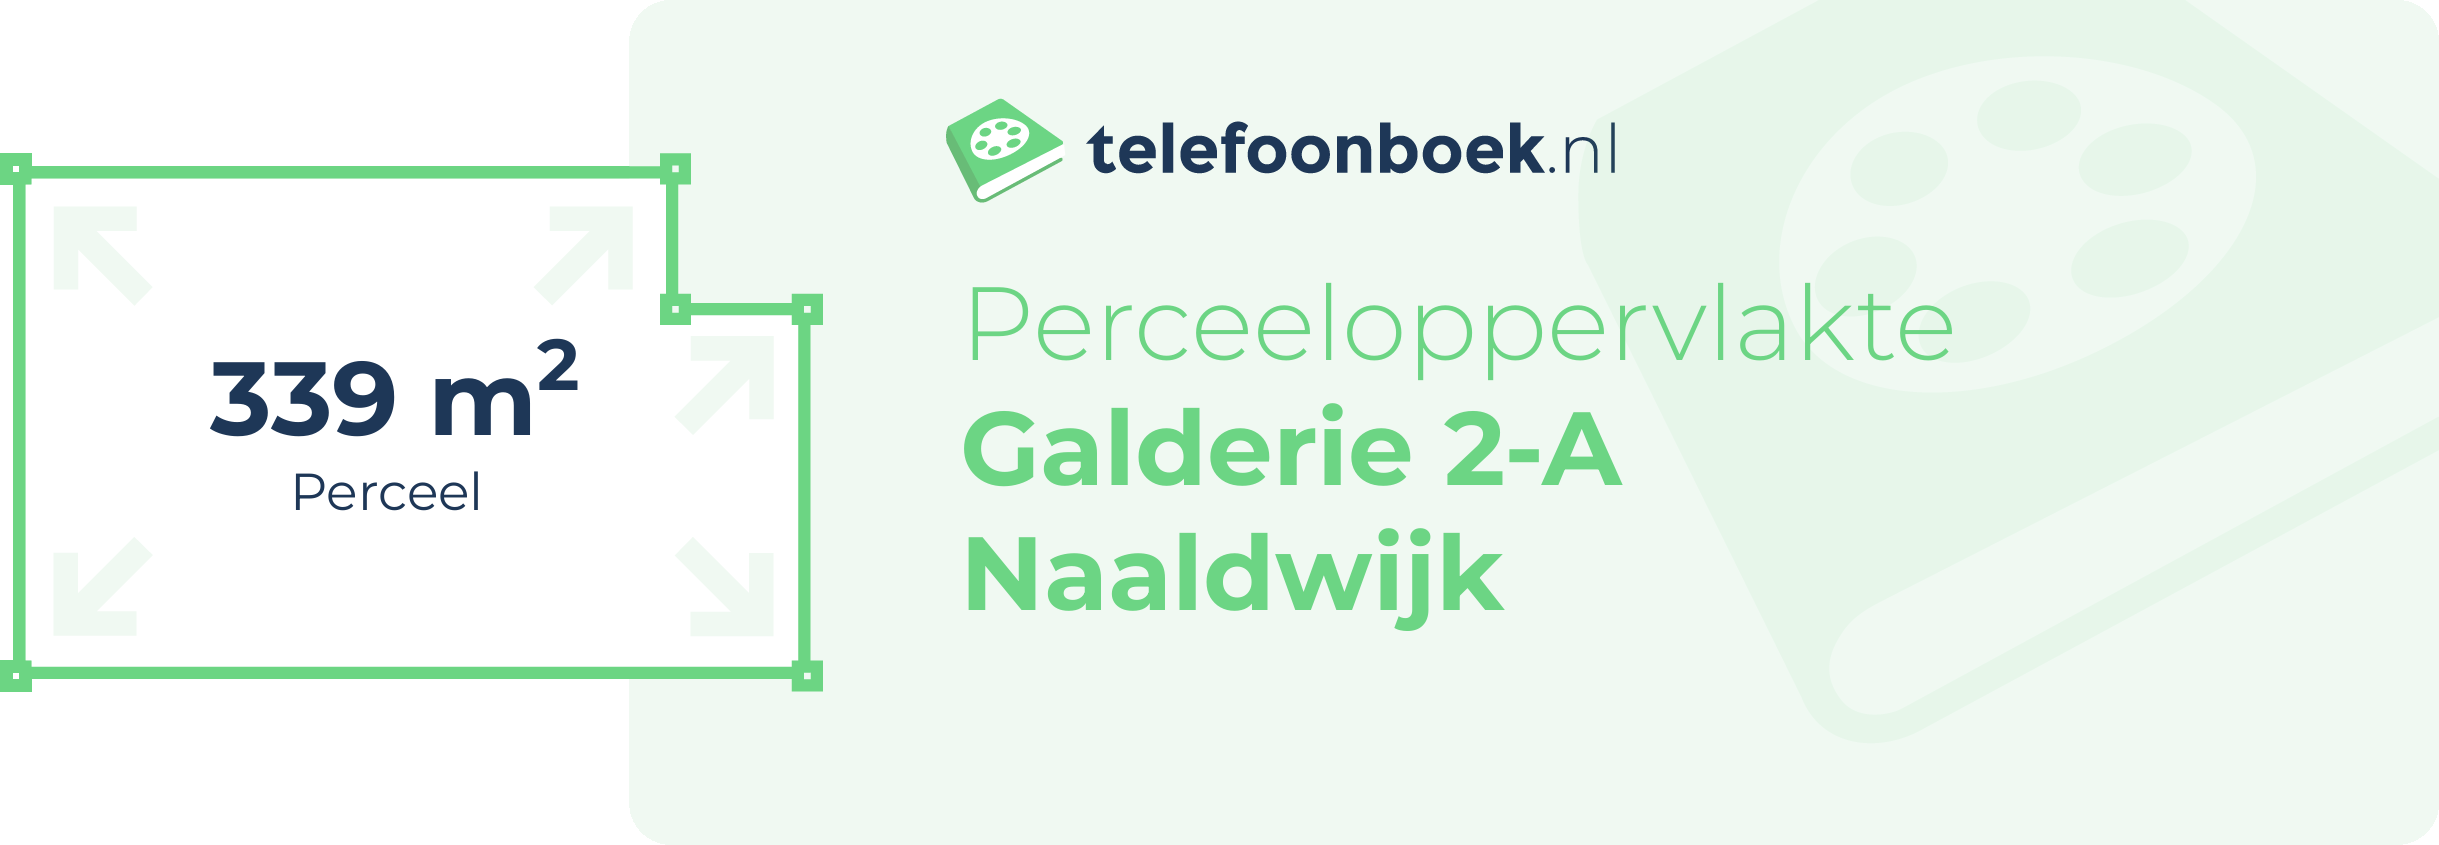 Perceeloppervlakte Galderie 2-A Naaldwijk